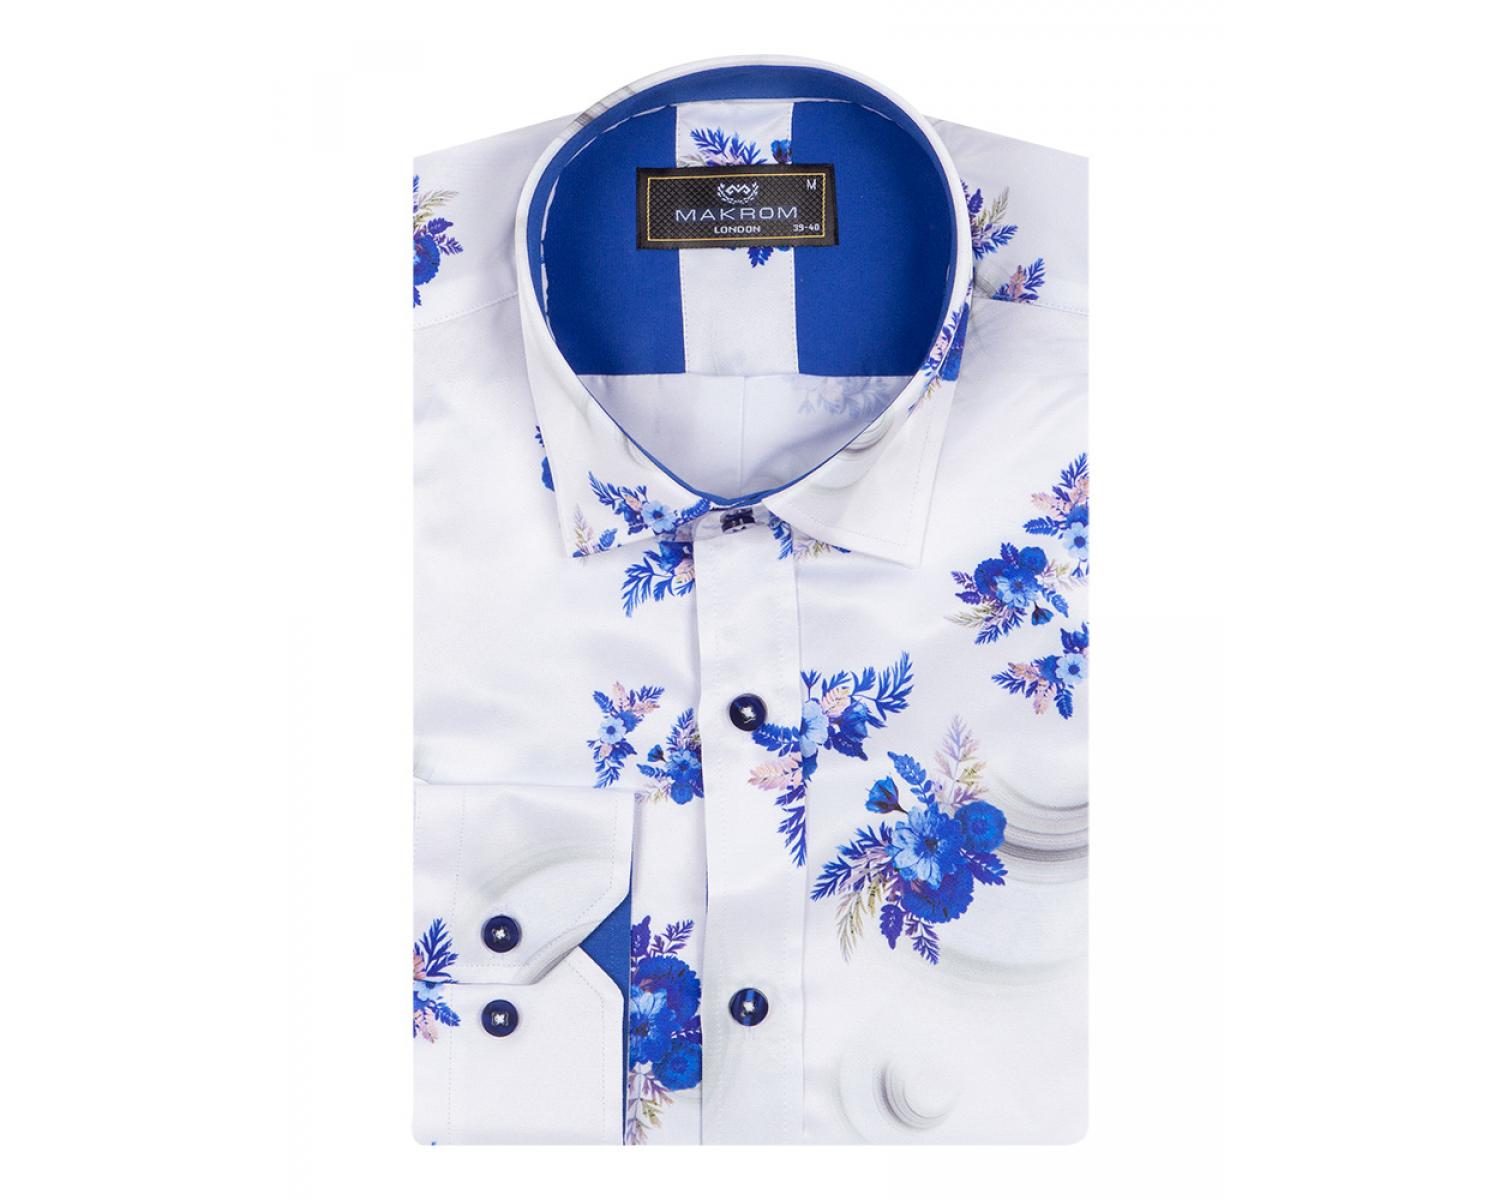 SL 6864 Men's & royal blue floral print long sleeved shirt - Quality Designed